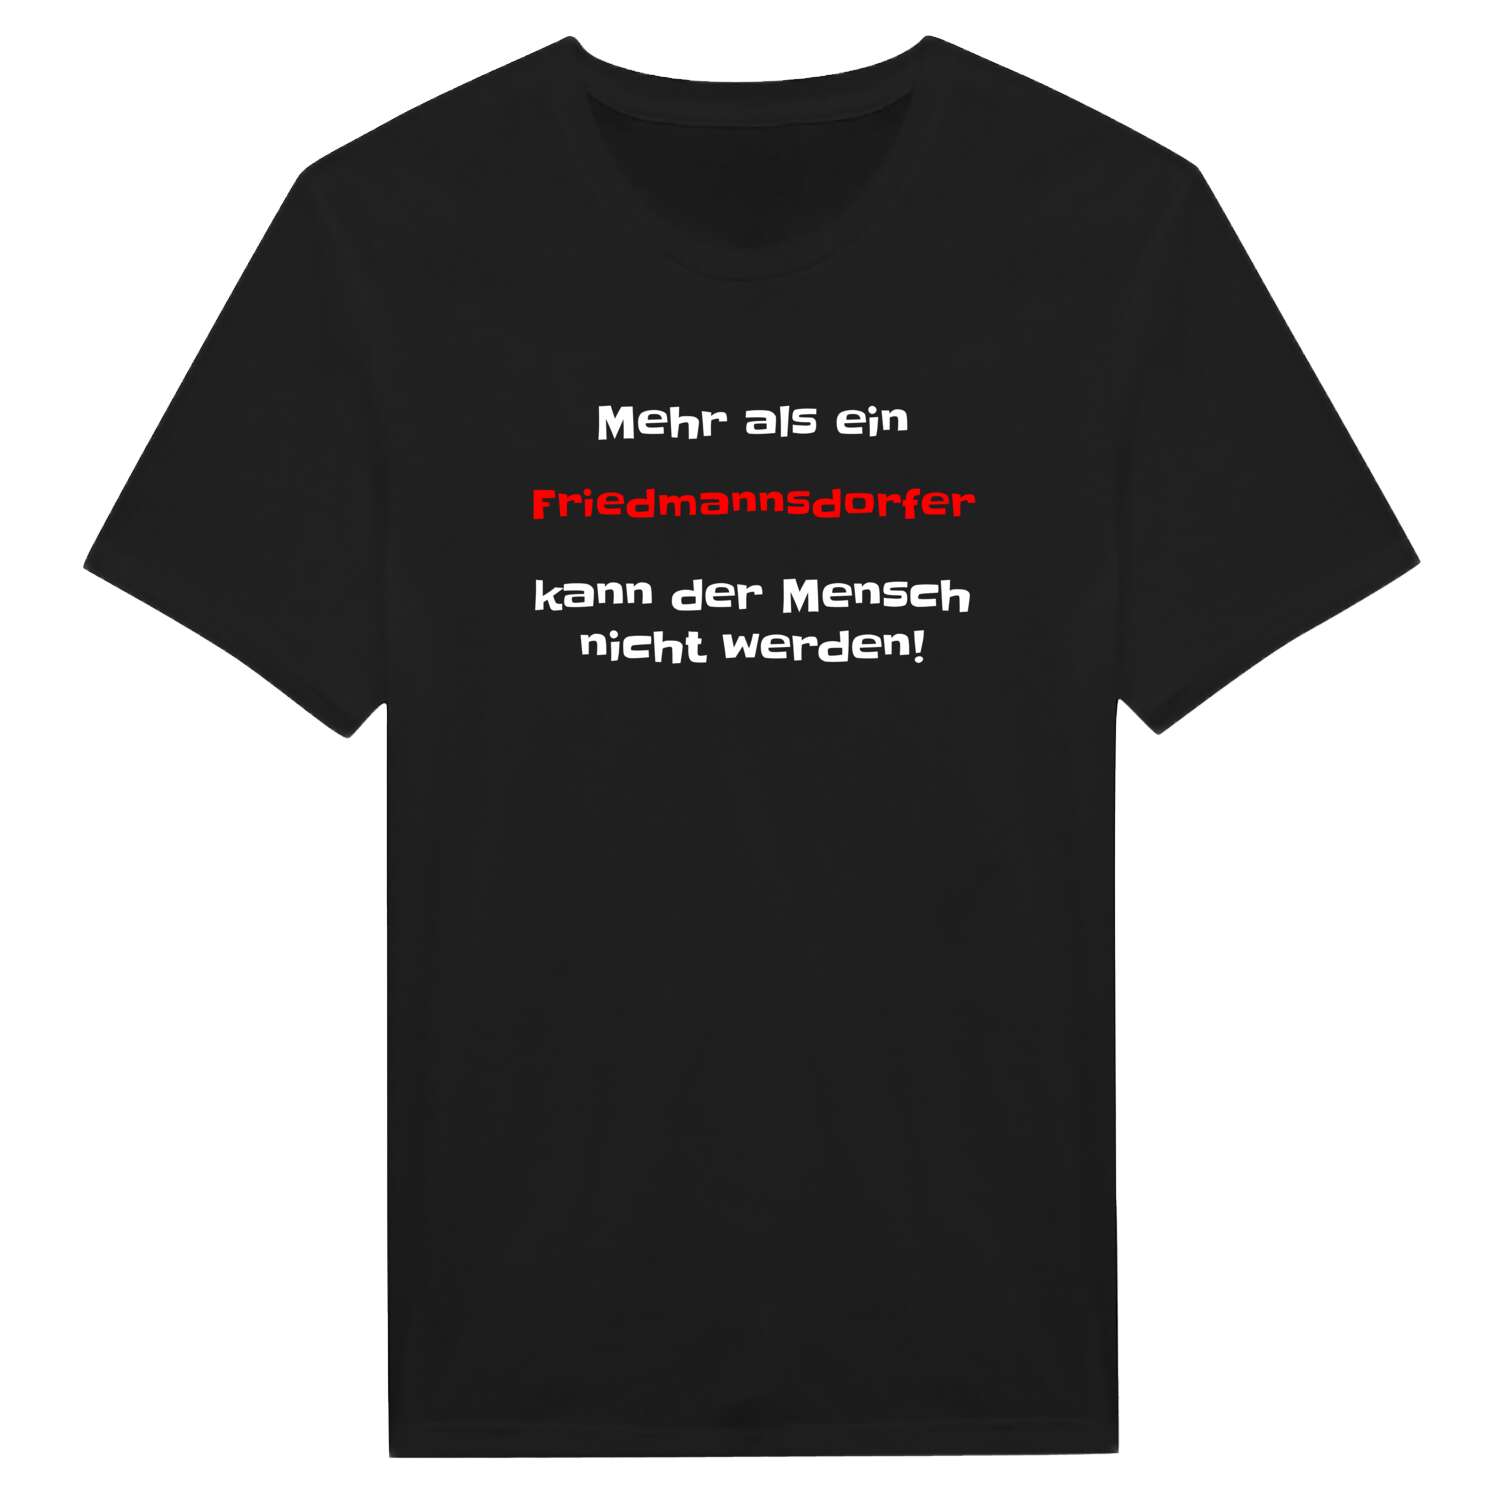 Friedmannsdorf T-Shirt »Mehr als ein«